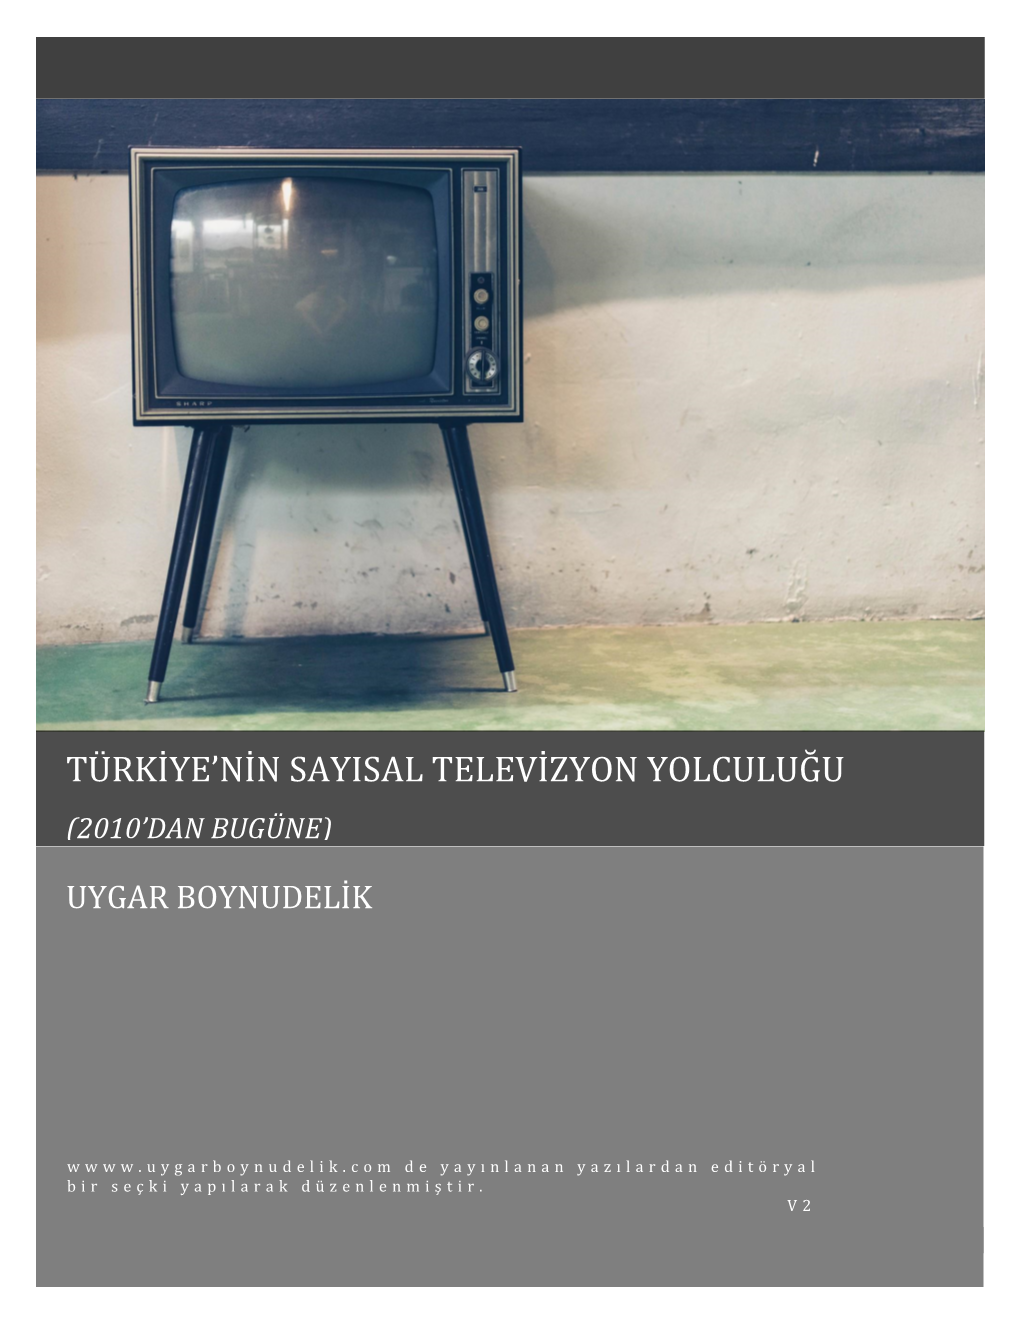 Türkiye'nin Sayisal Televizyon Yolculuğu